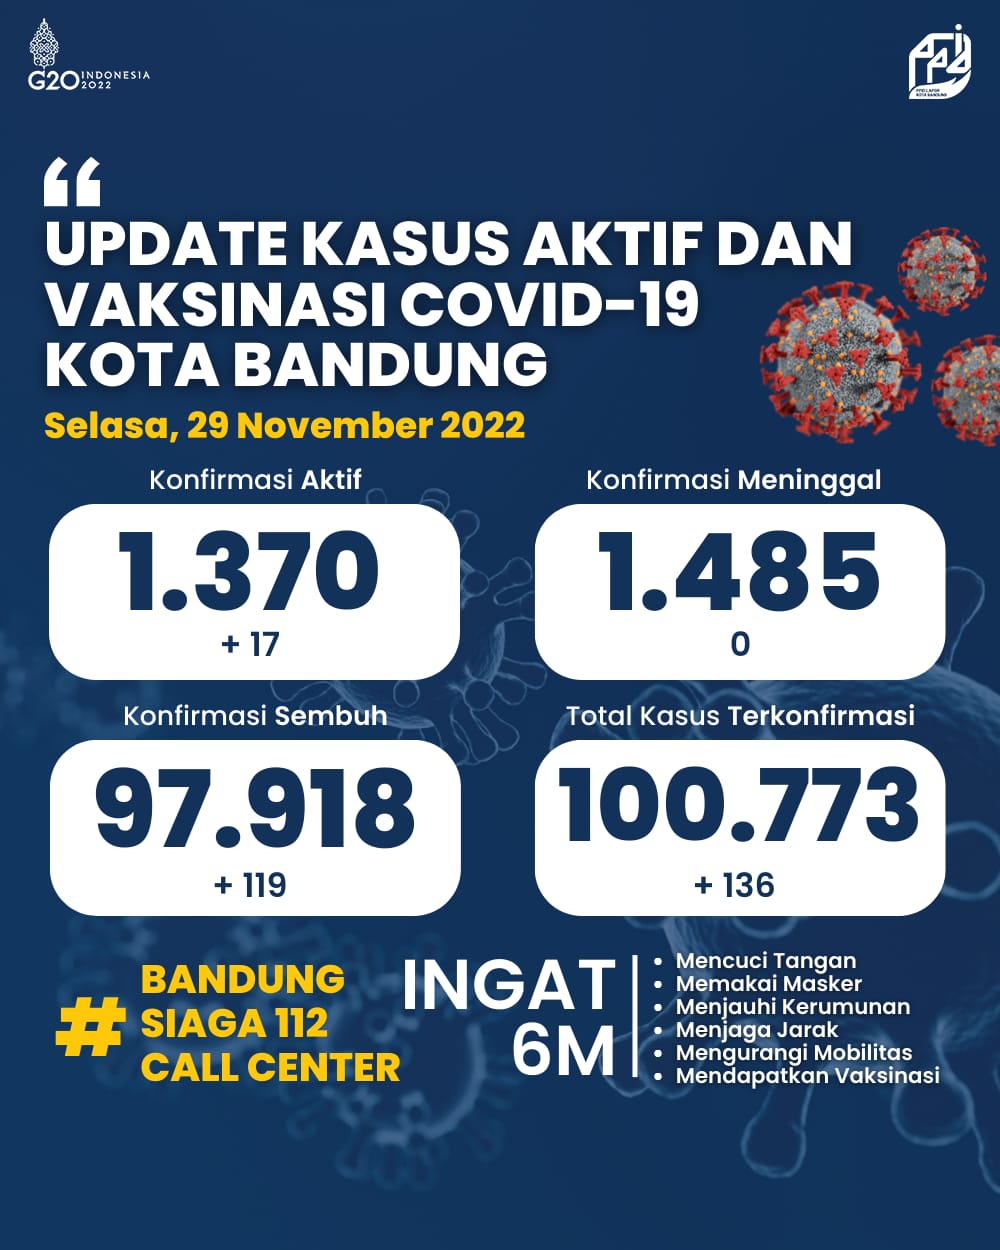 UPDATE STATISTIK COVID-19 DI KOTA BANDUNG PER TANGGAL 29 NOVEMBER 2022